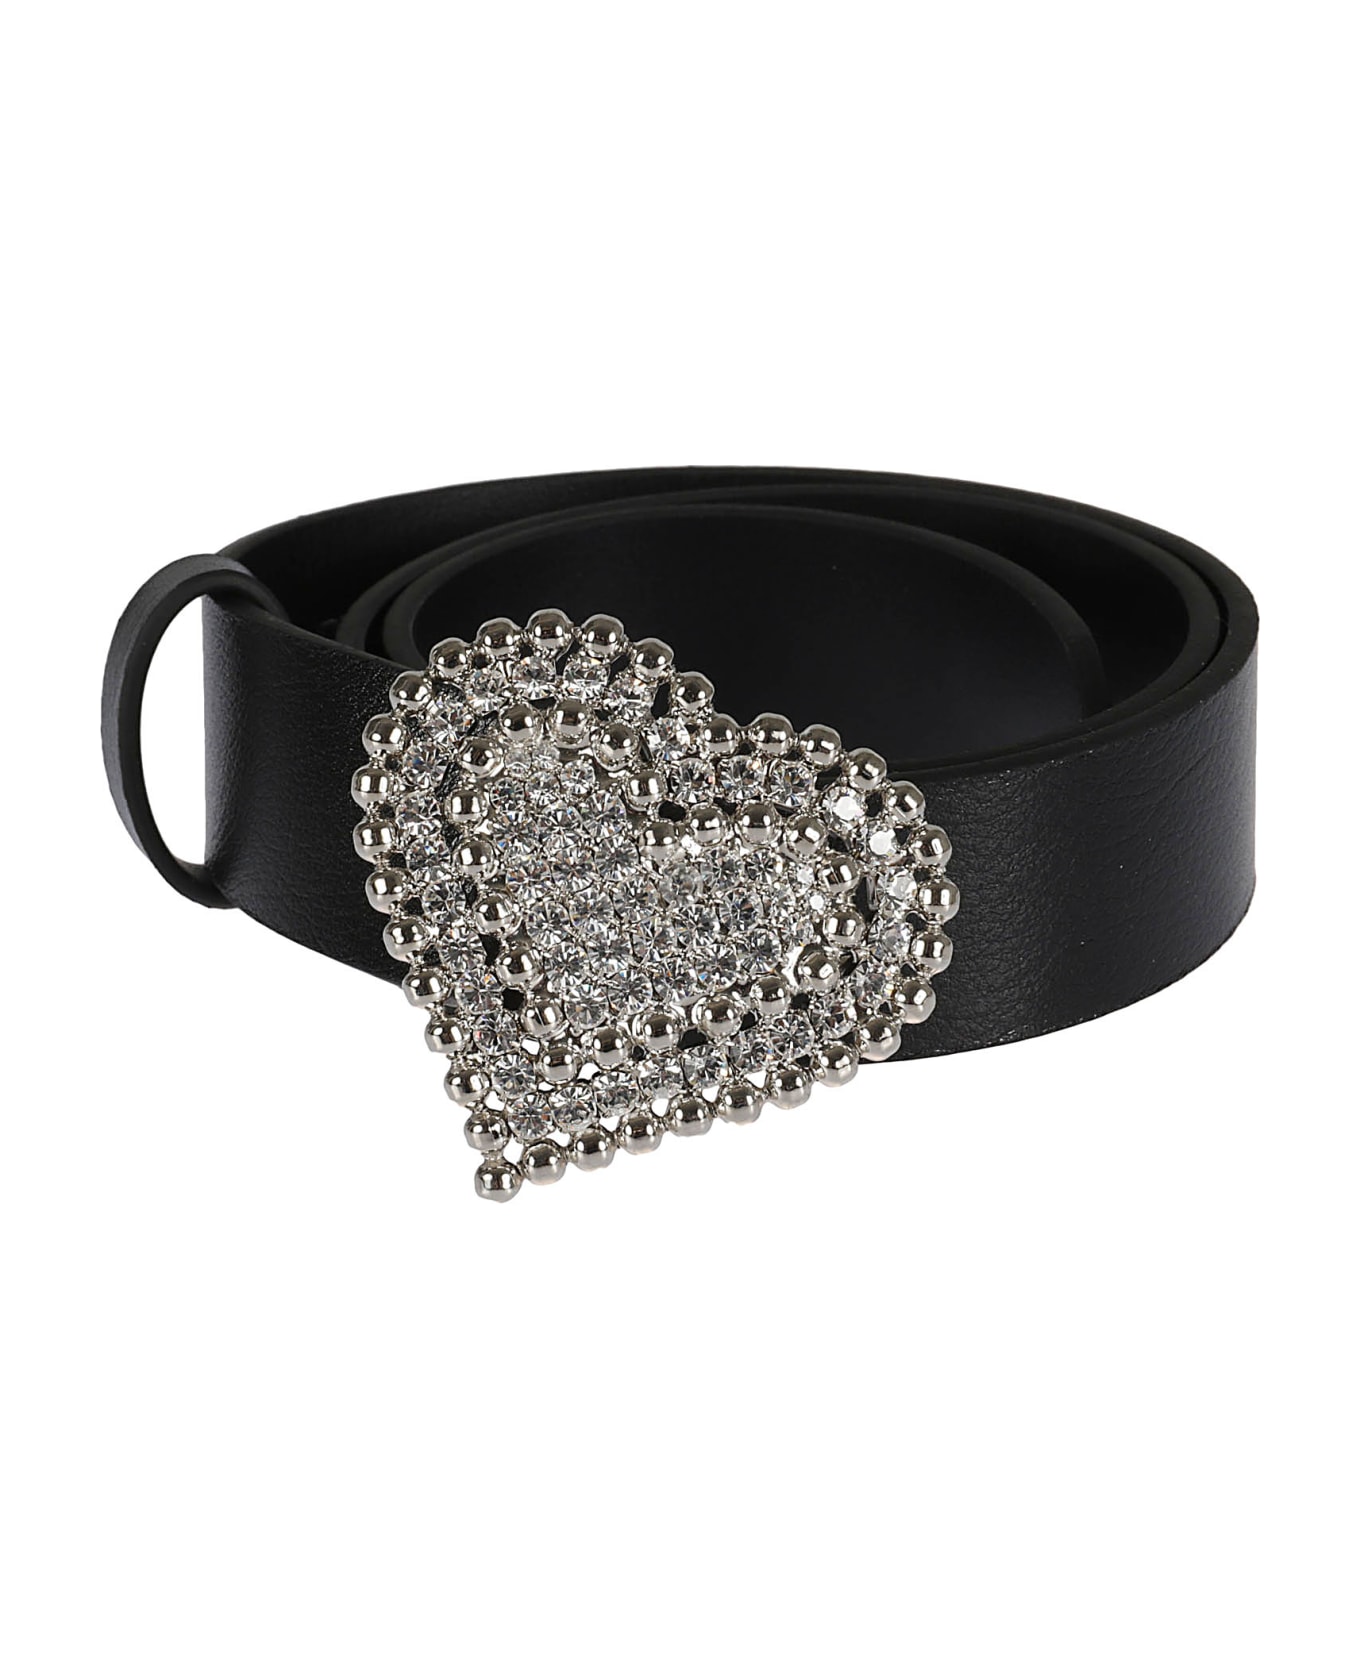 Alessandra Rich Crystal Embellished Heart Buckled Belt - Black